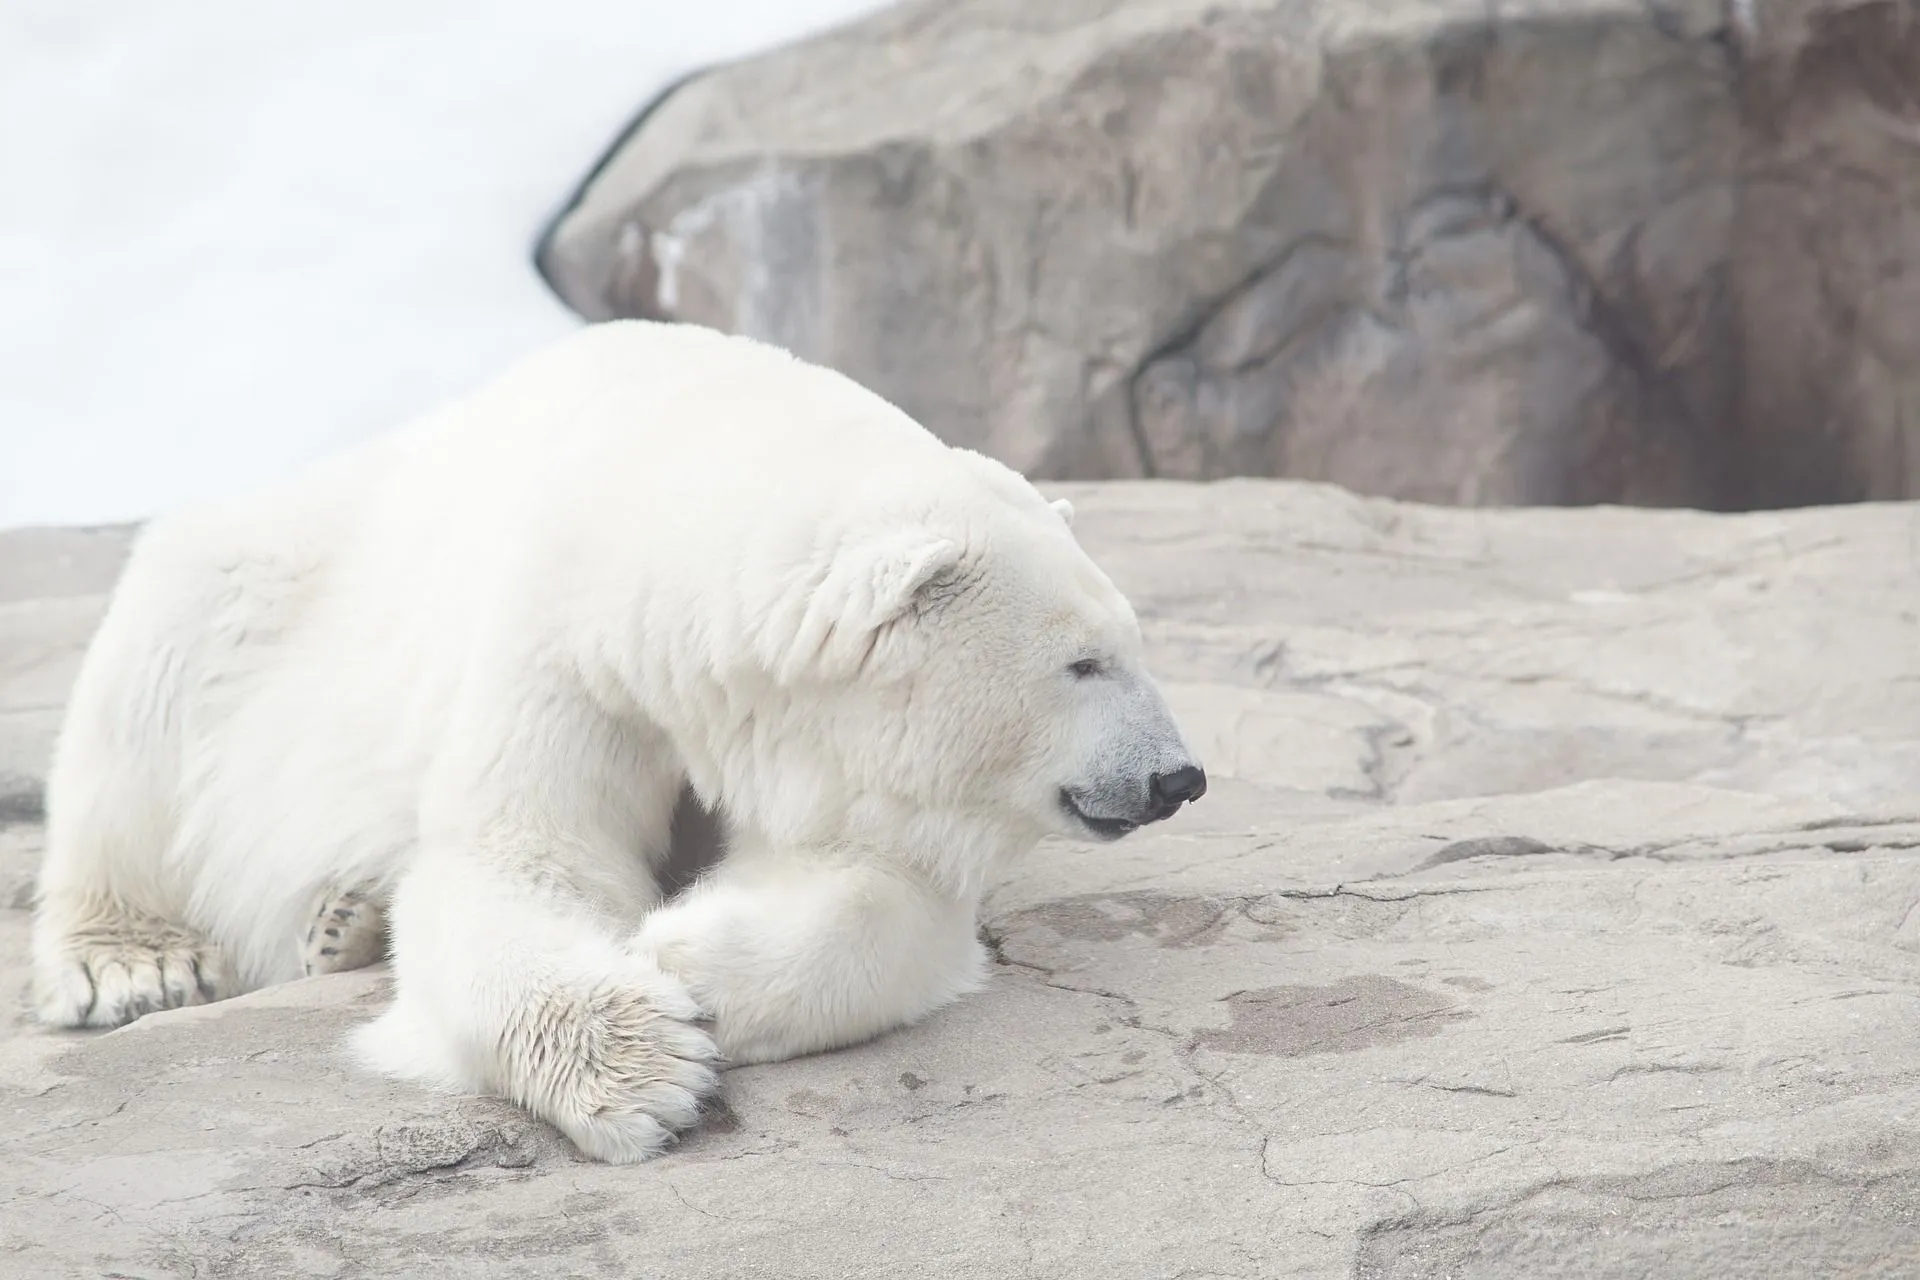 The polar bear lives a solitary life.